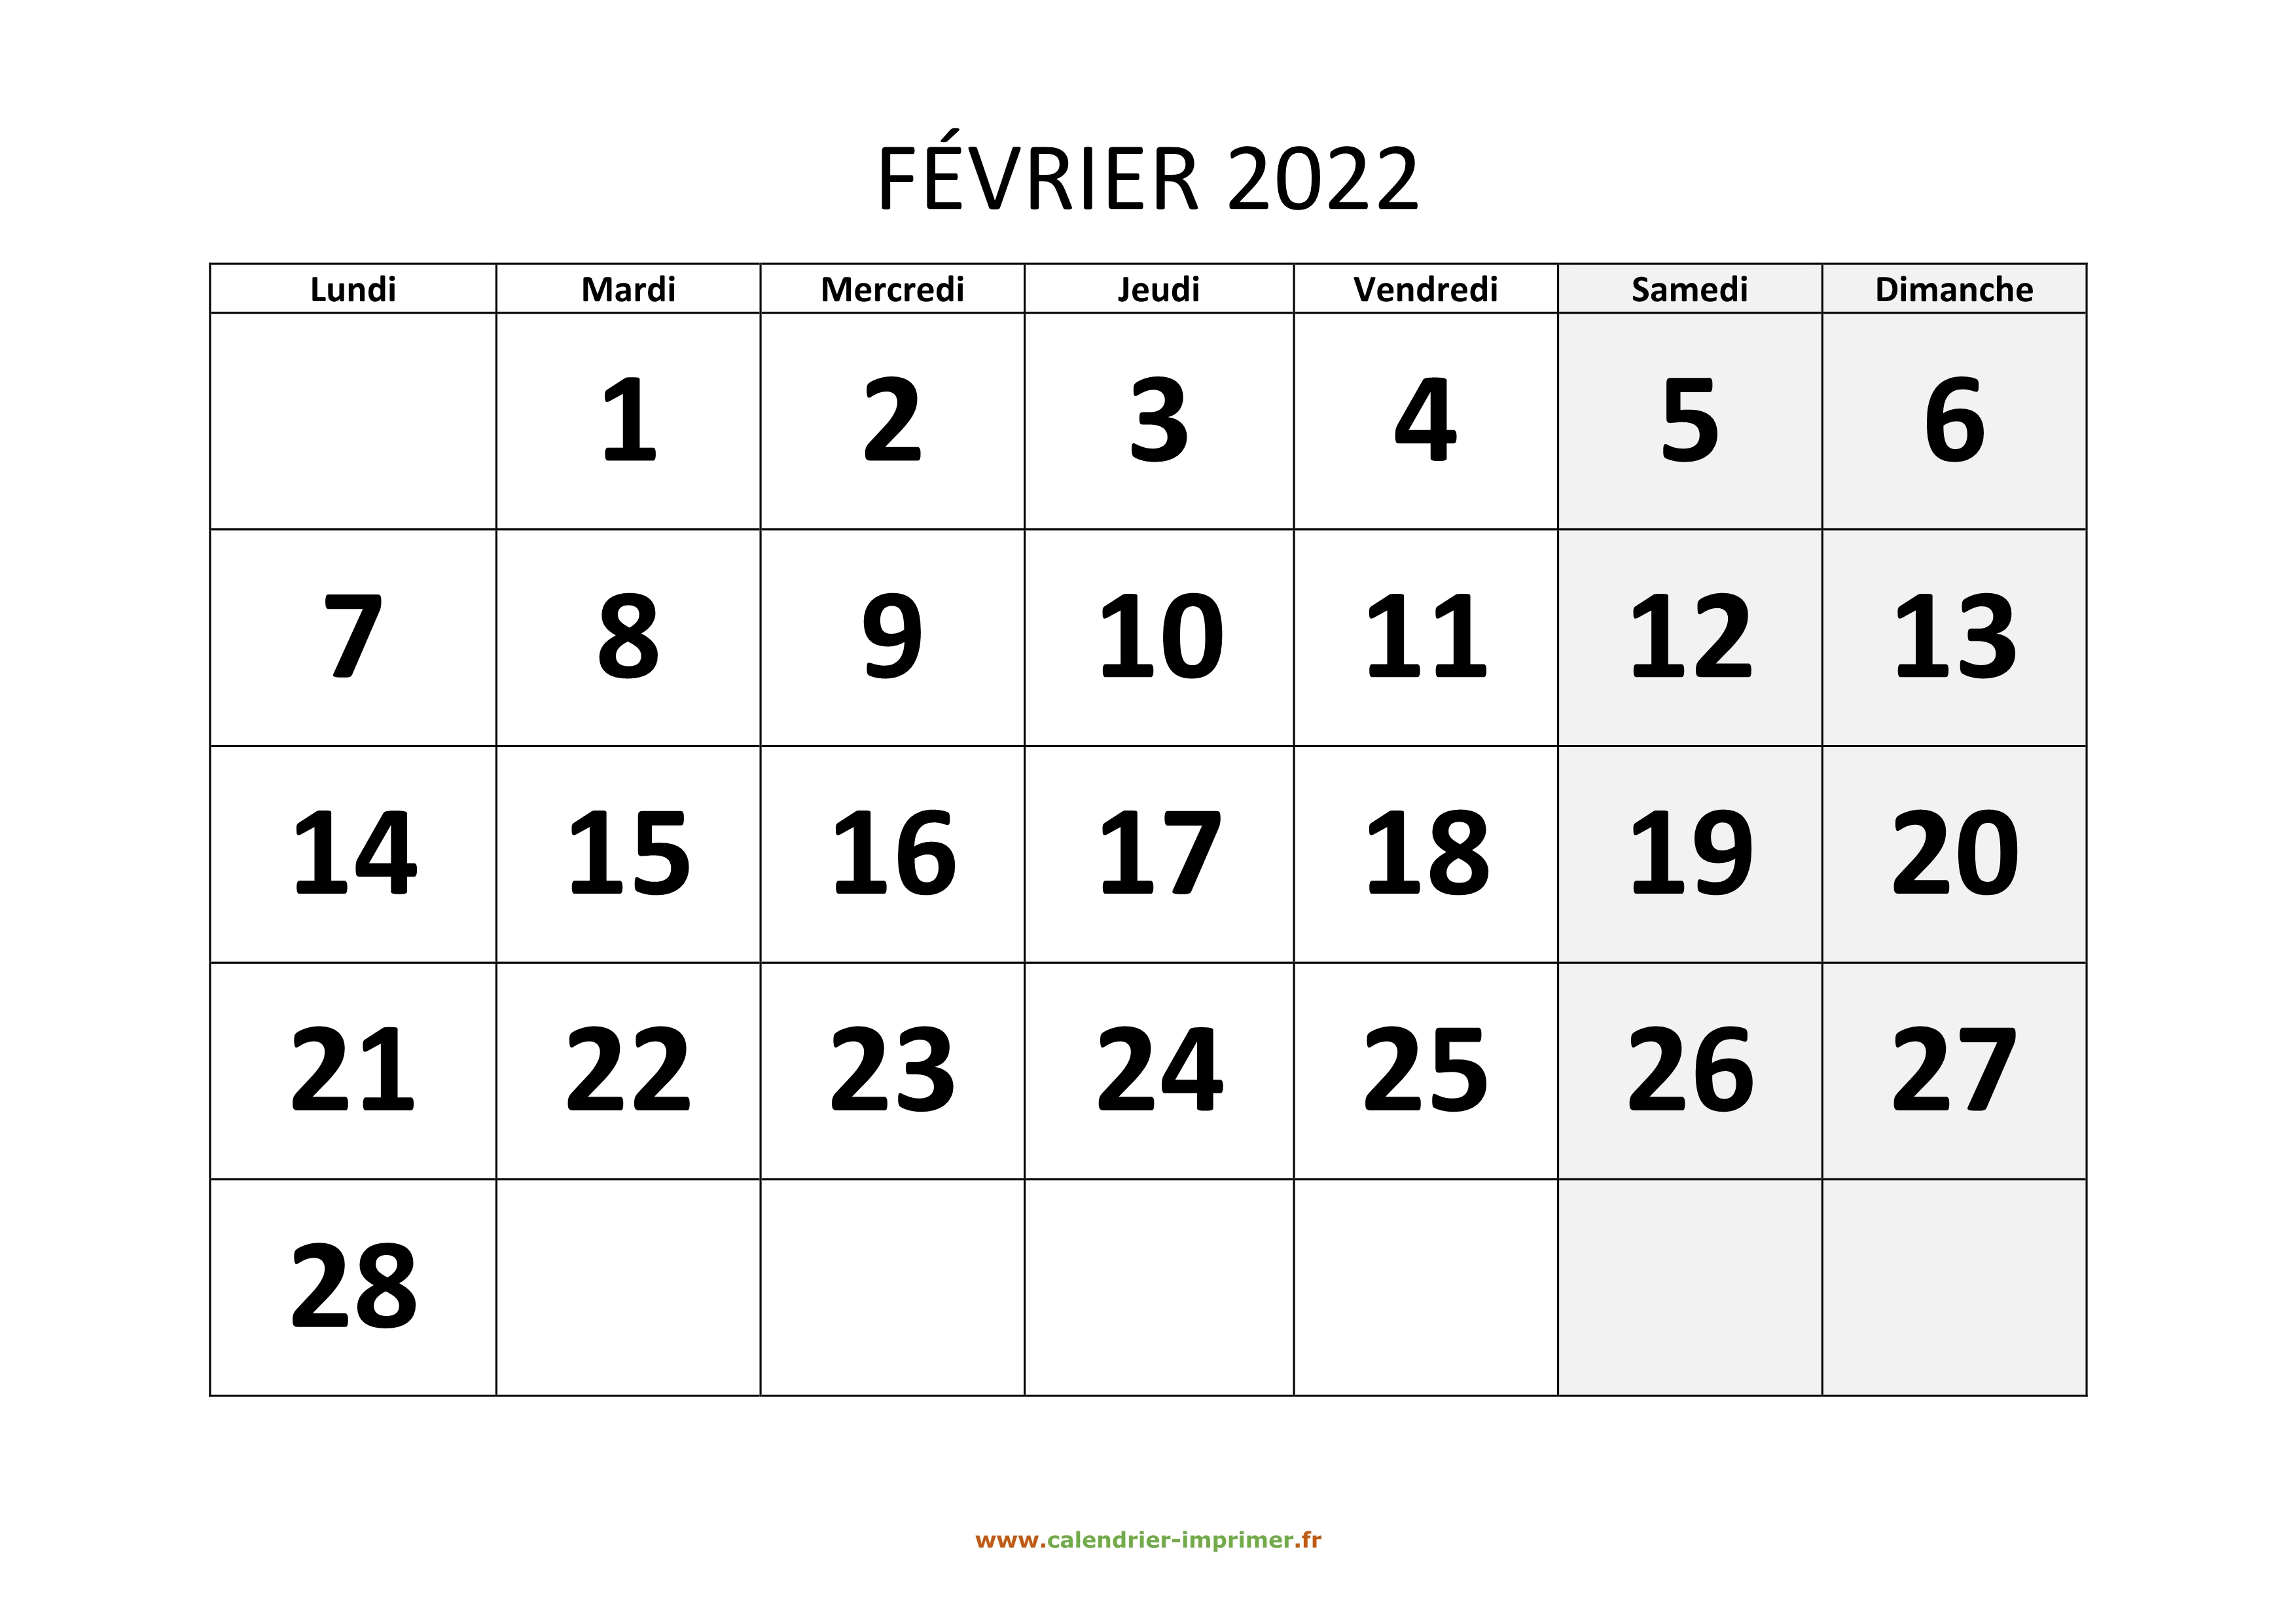 Calendrier Février Mars 2022 Calendrier Février 2022 à imprimer